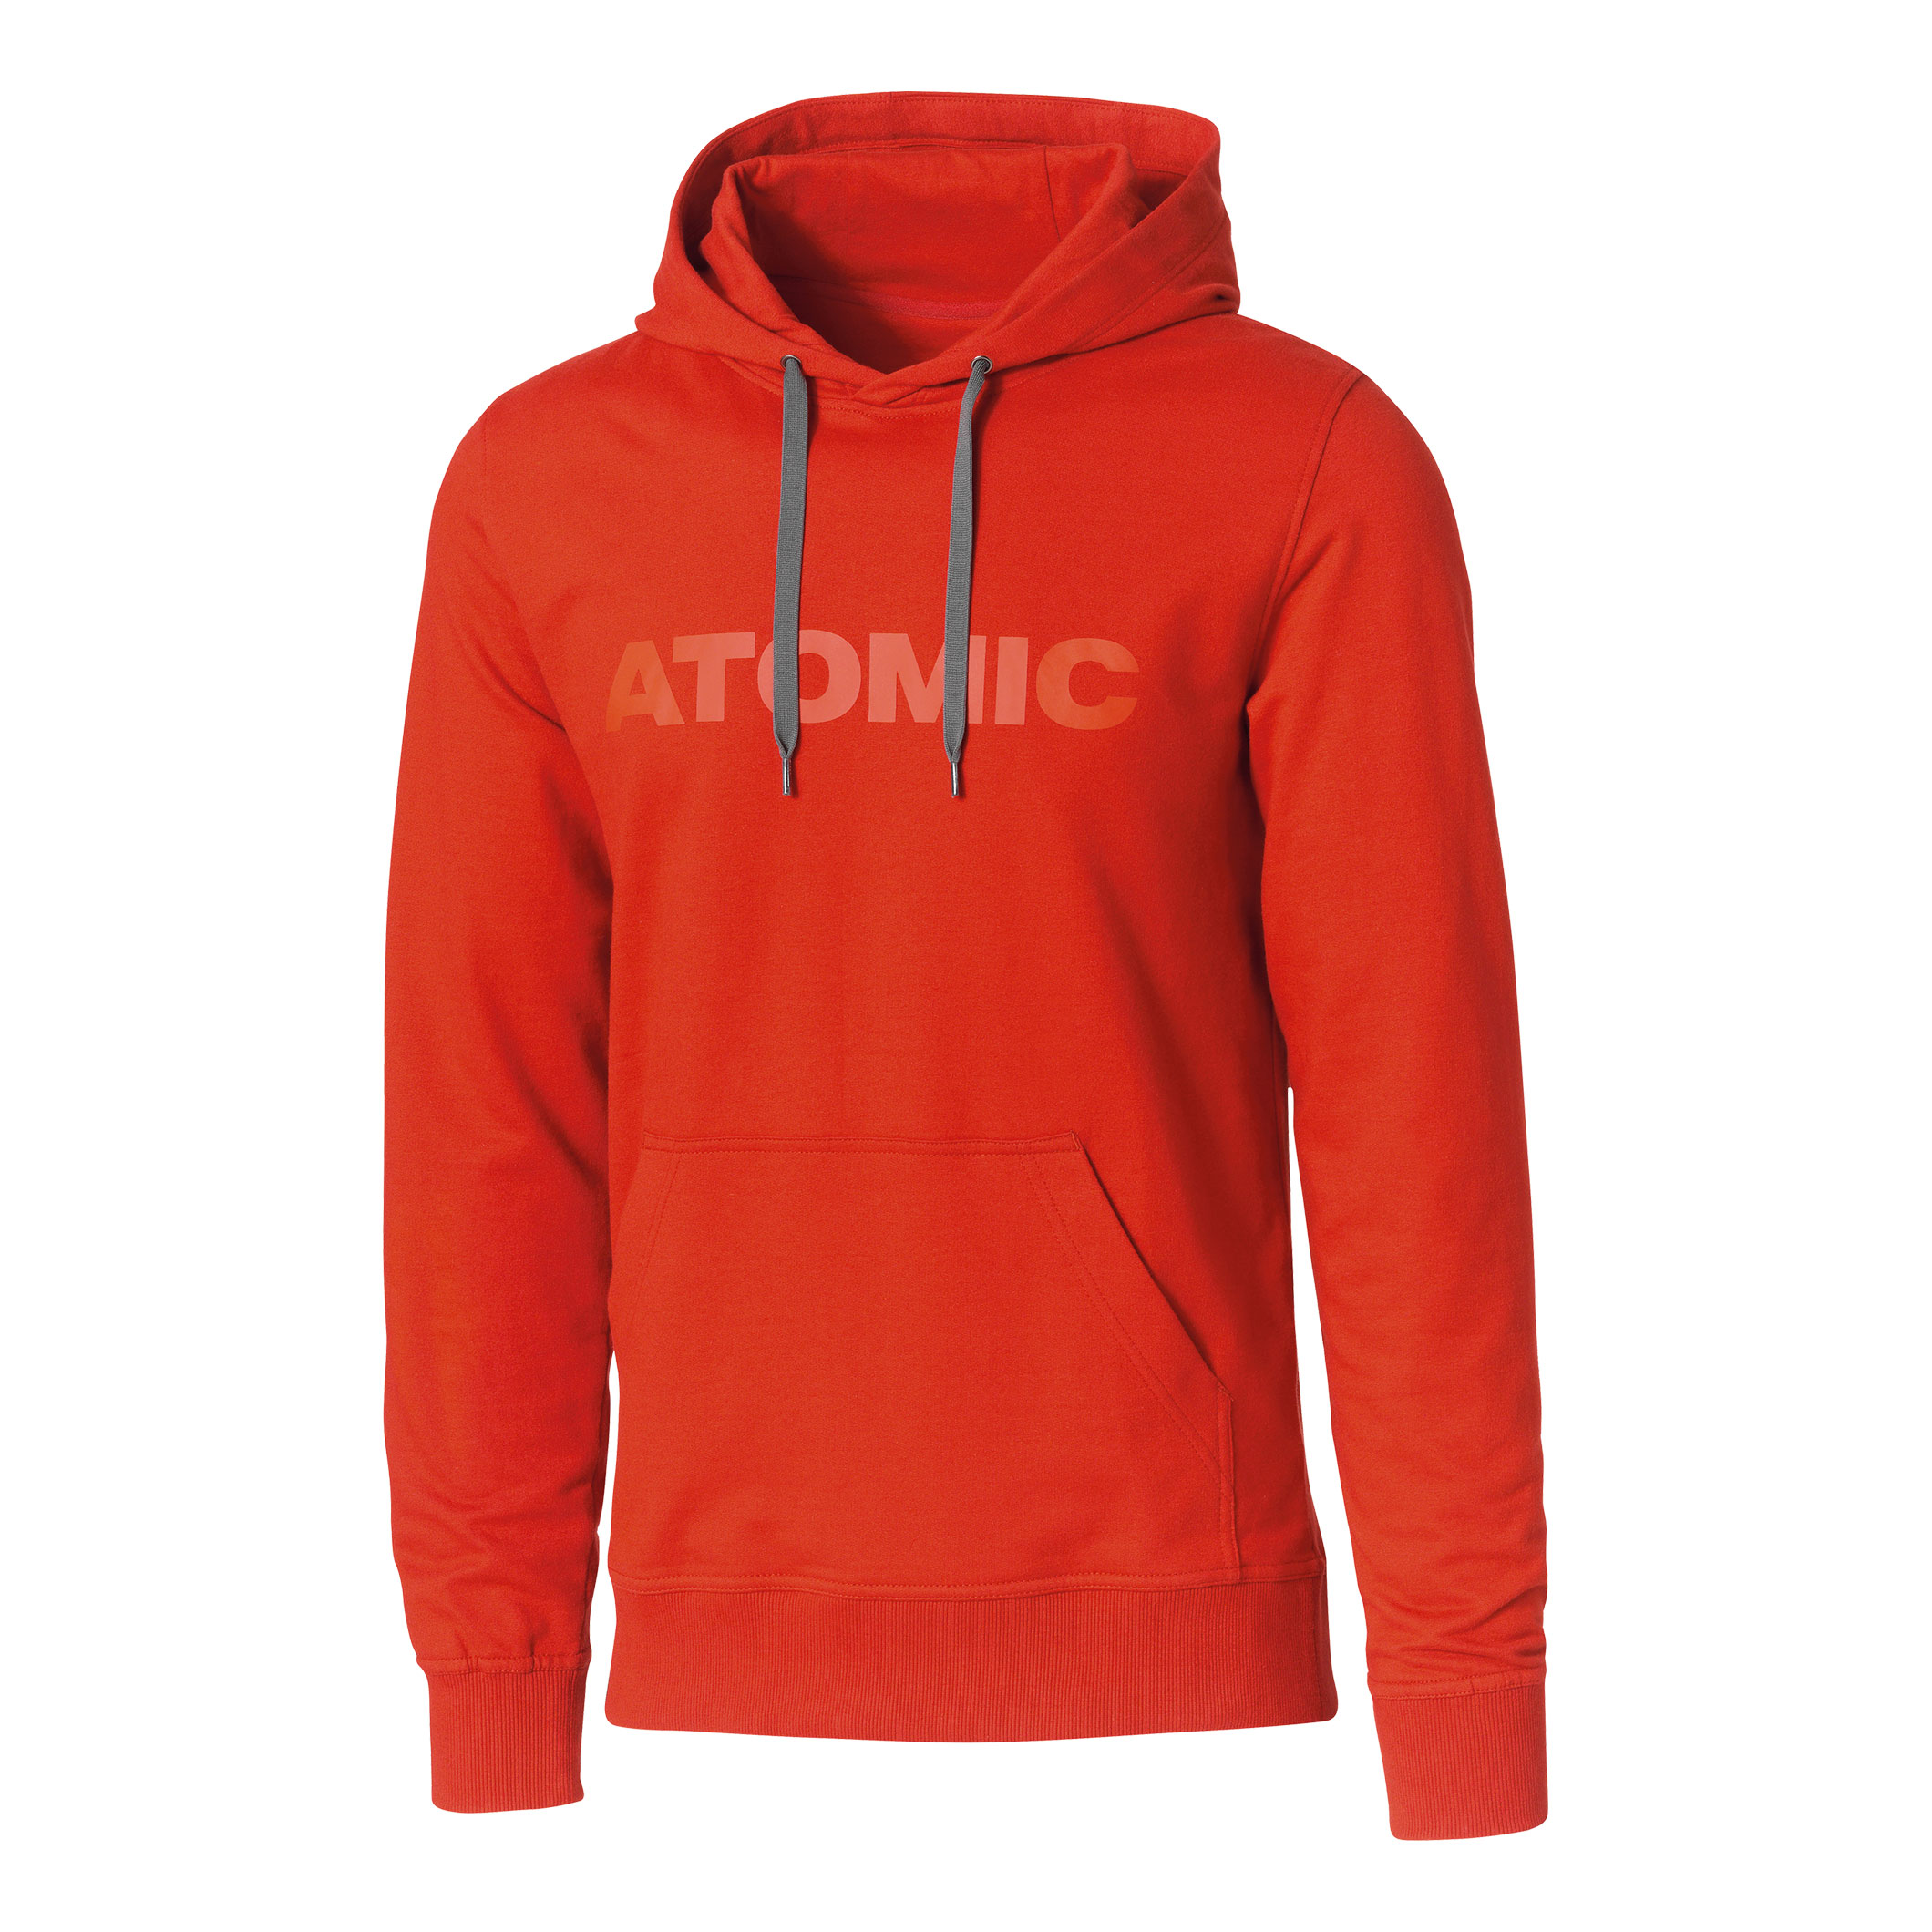 Atomic alps hoodie